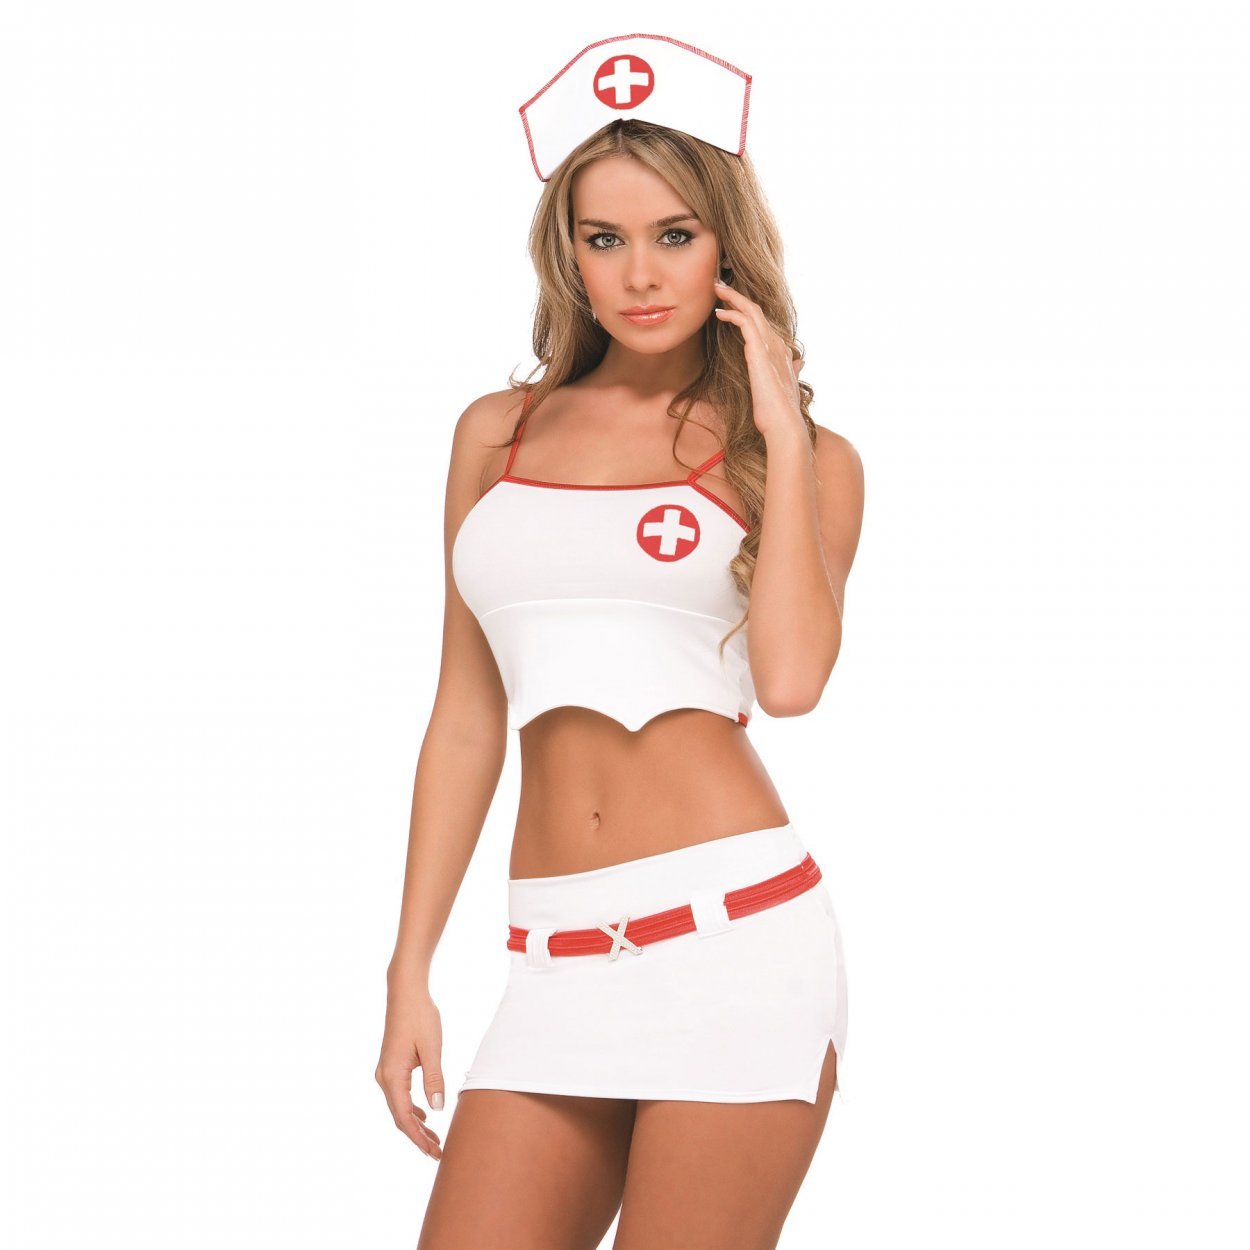 Фото голой девушки медсестры